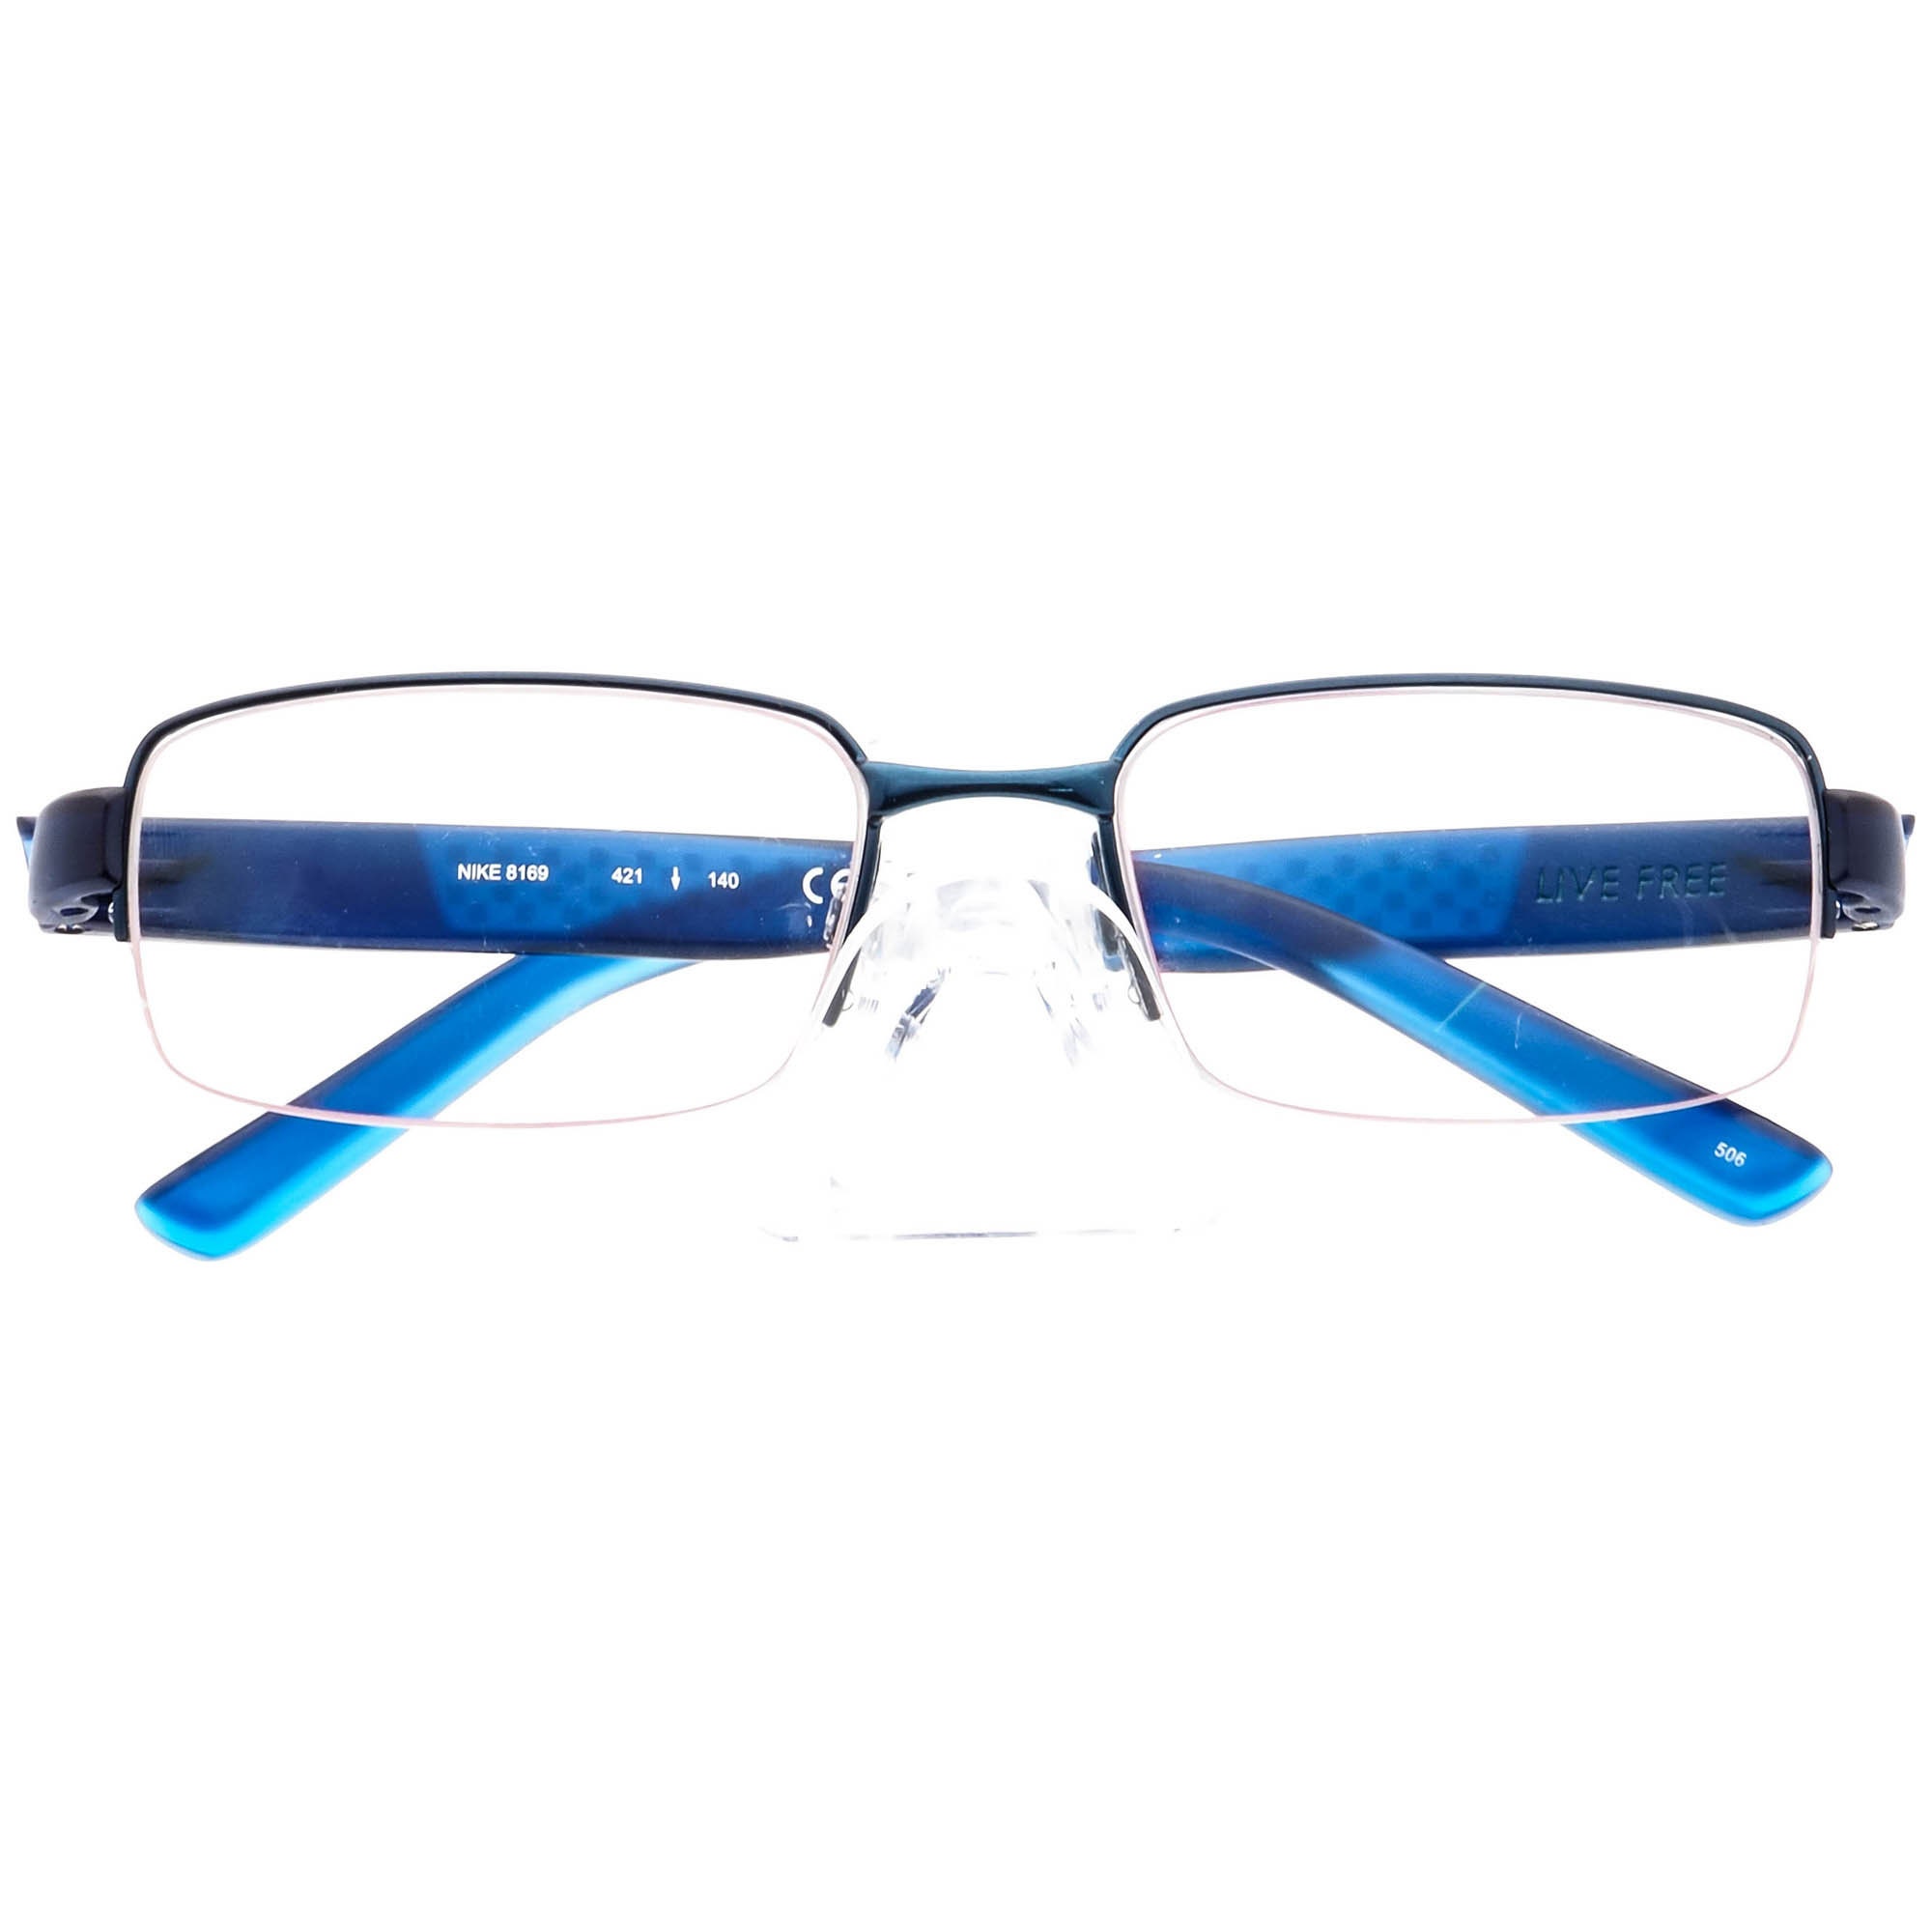 Nike Men's Eyeglasses 8169 421 Blue/matte Blue - Etsy